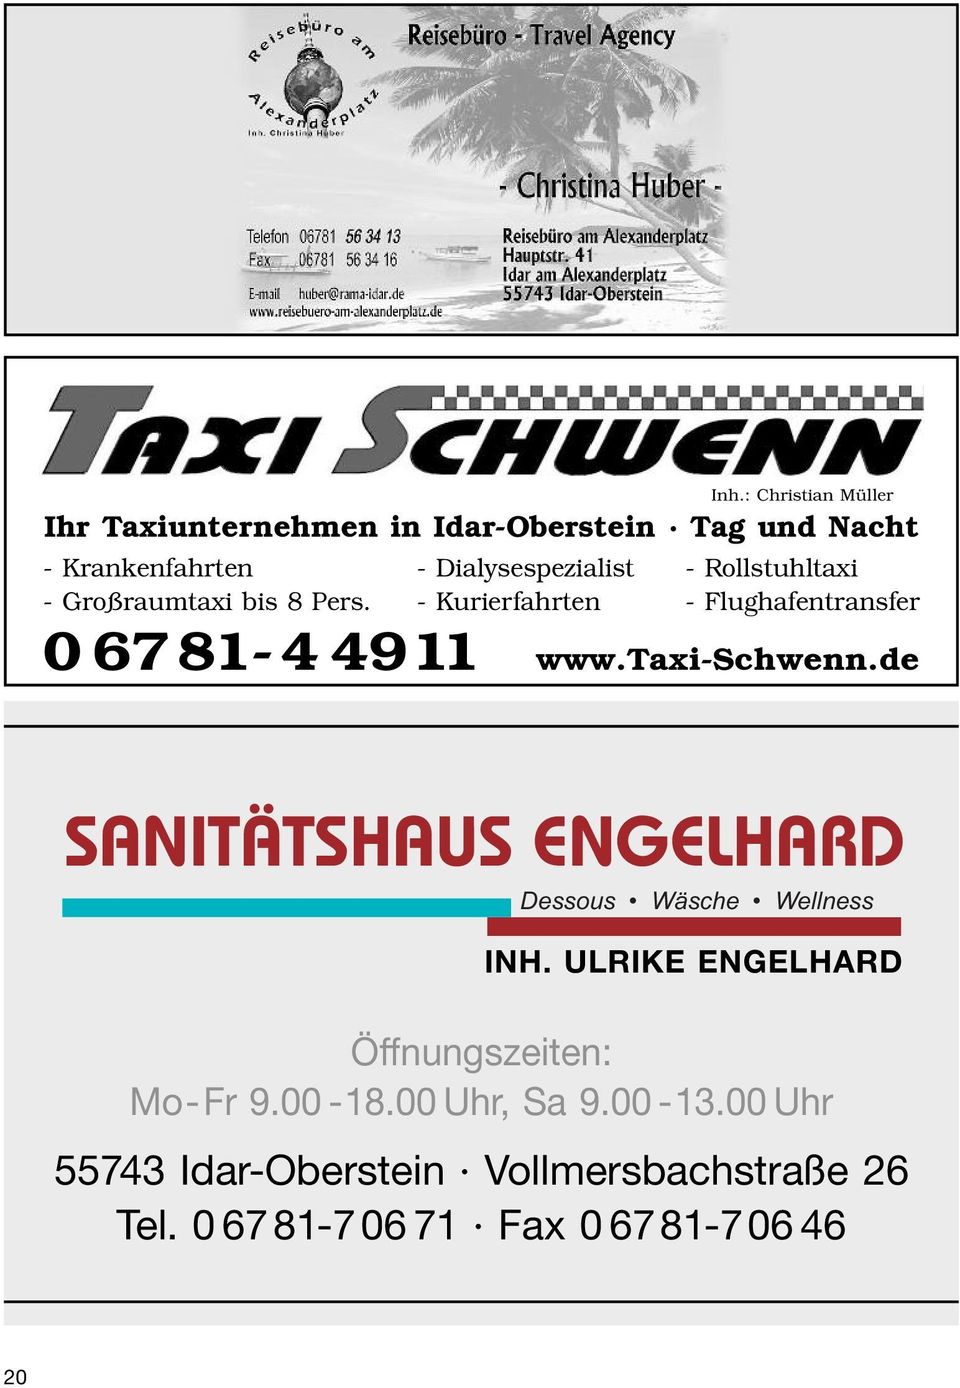 Rollstuhltaxi - Großraumtaxi bis 8 Pers. - Kurierfahrten - Flughafentransfer 06781-44911 www.taxi-schwenn.